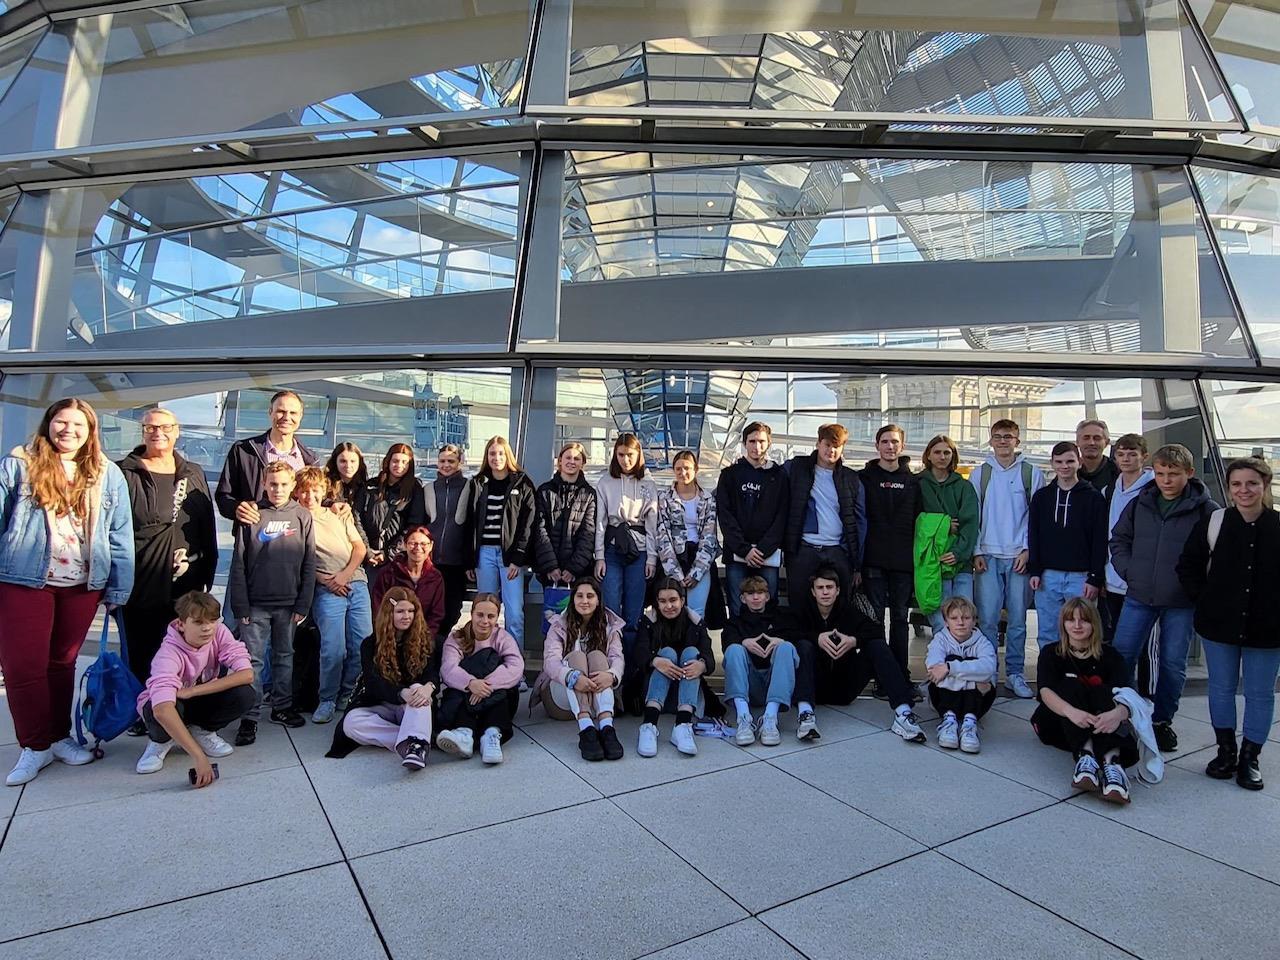 31 Jugendliche zwischen 13 und 17 Jahren haben gemeinsam das Reichstagsgebäude während der Studienfahrt nach Berlin besucht. (Foto: Jennifer Staffa, Kinder- und Jugendbüro Grünberg)